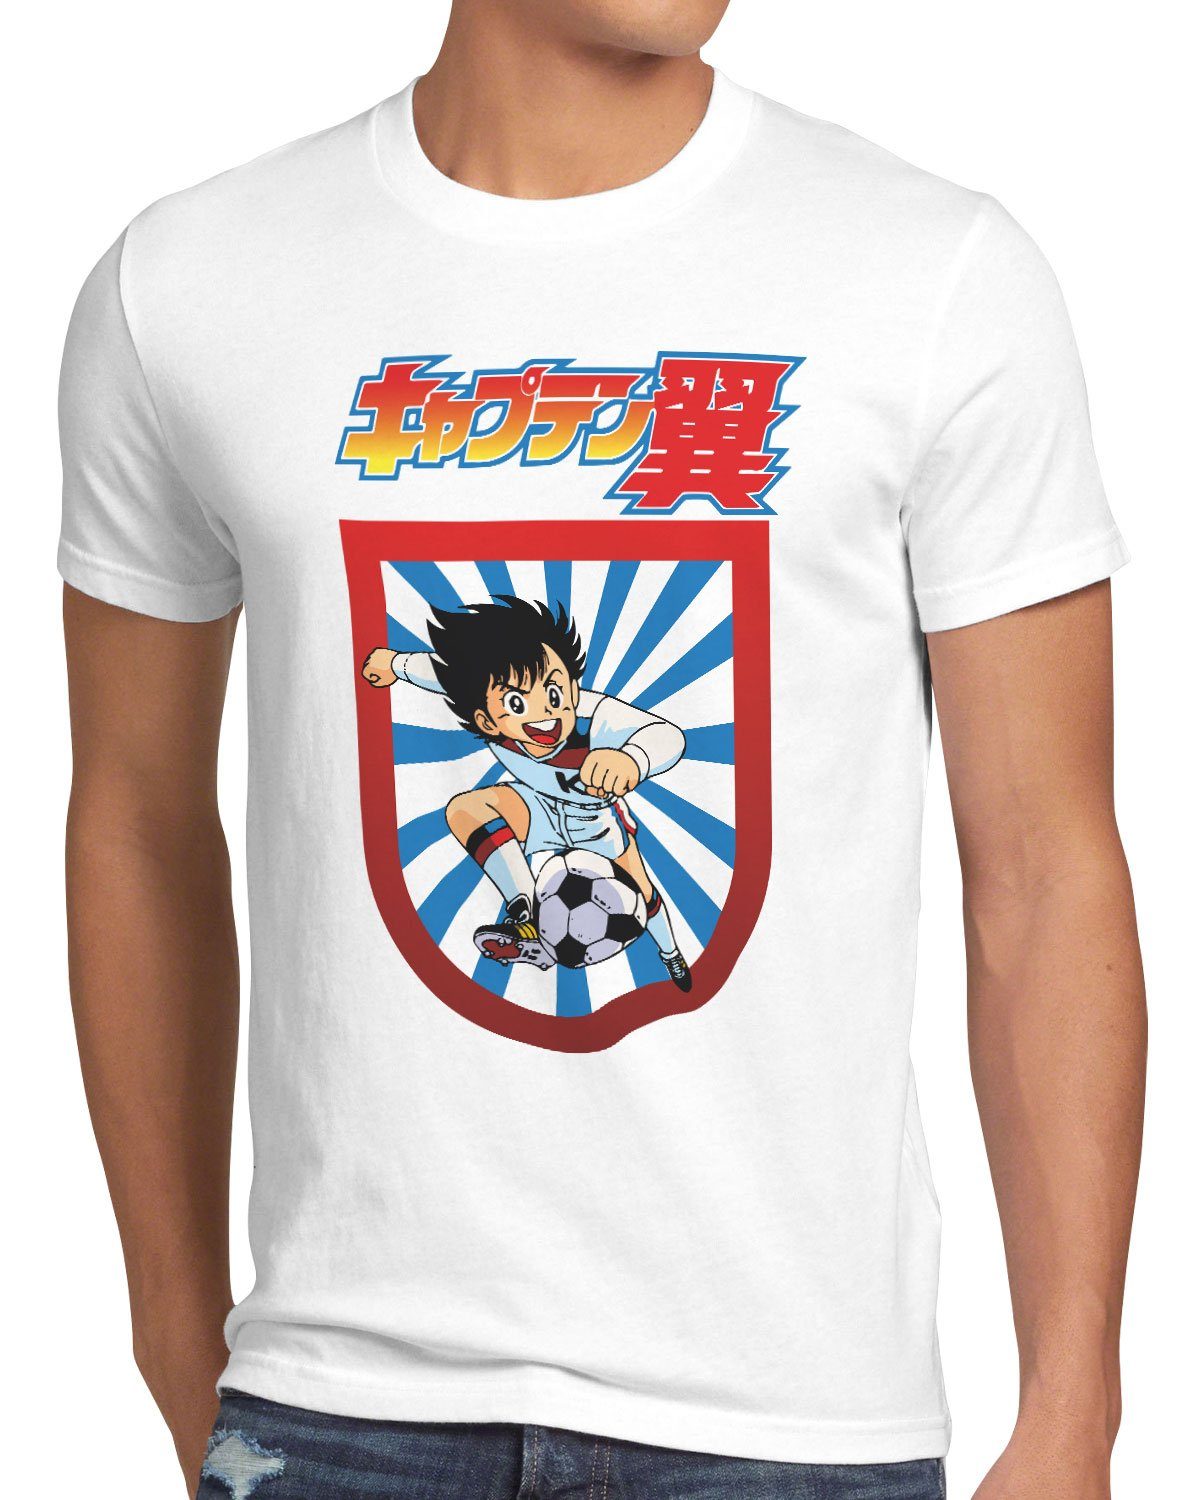 em tollen wm T-Shirt fußballstars style3 Print-Shirt Herren Tsubasa weiß